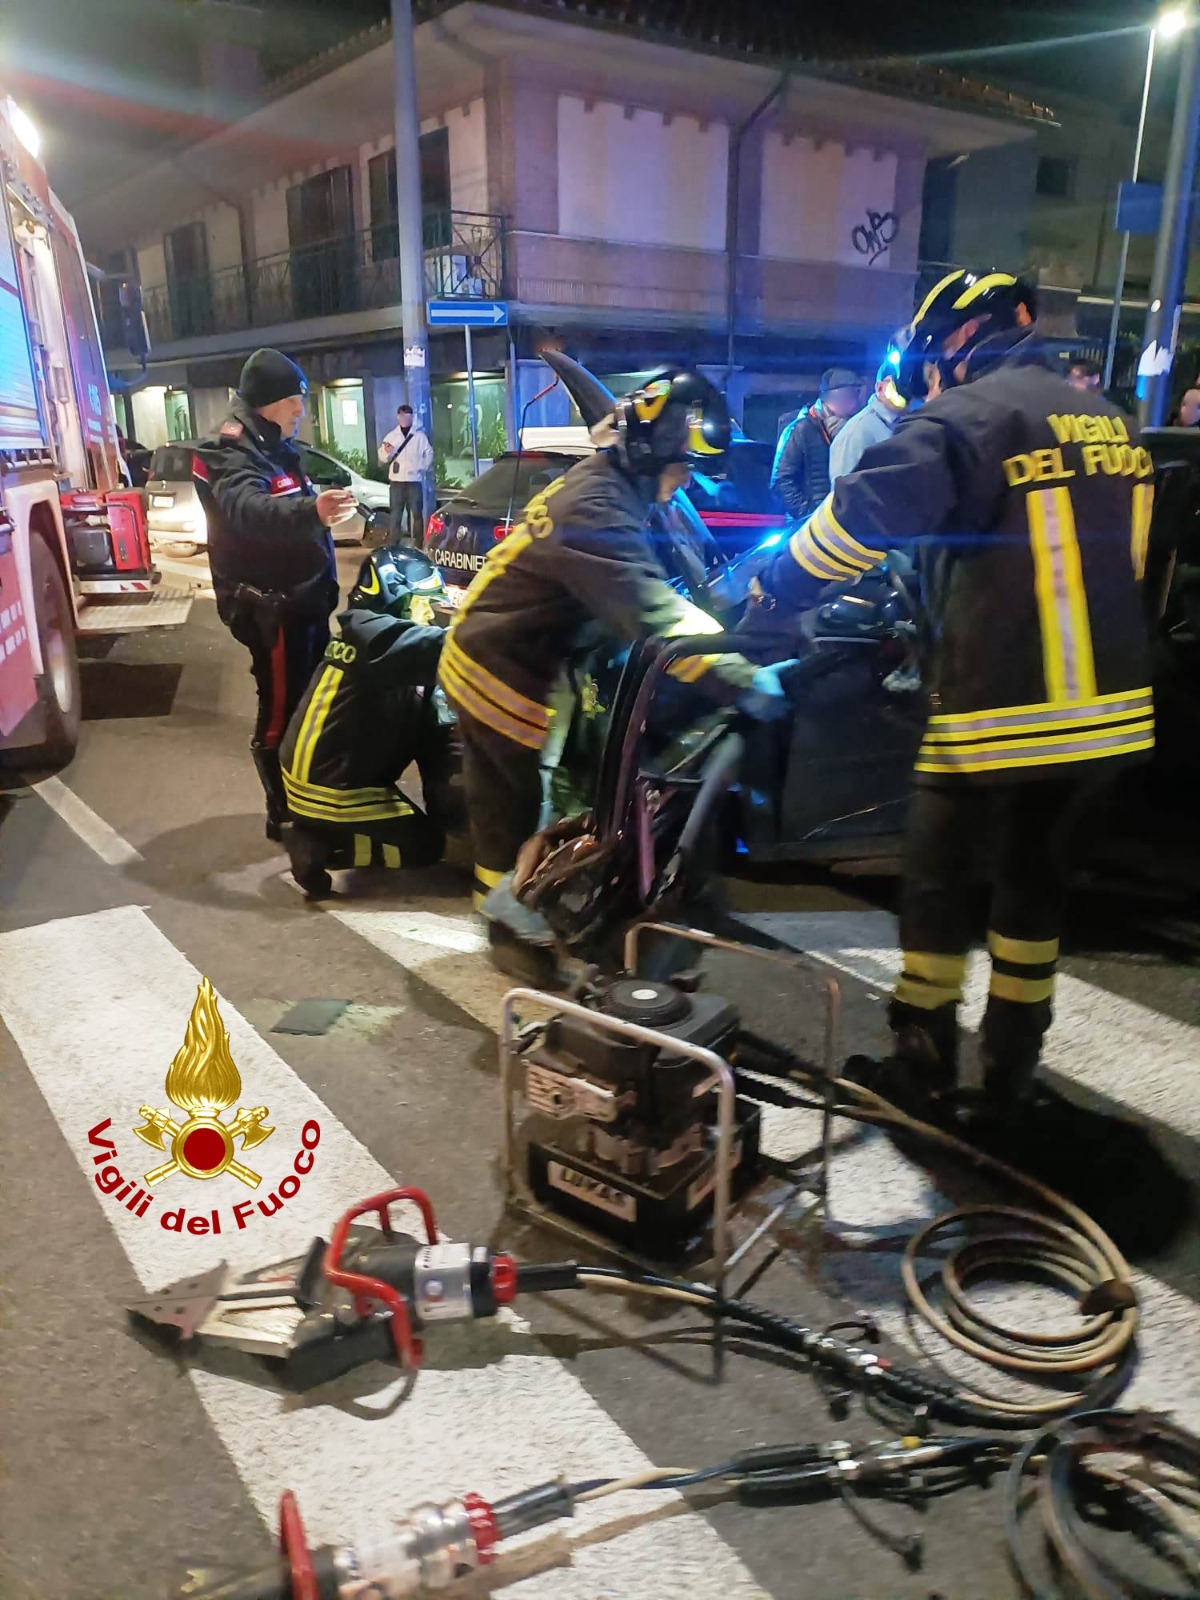 Avellino| Grave incidente nella notte in via Colombo, 33enne trasportato in eliambulanza all’ospedale Del Mare